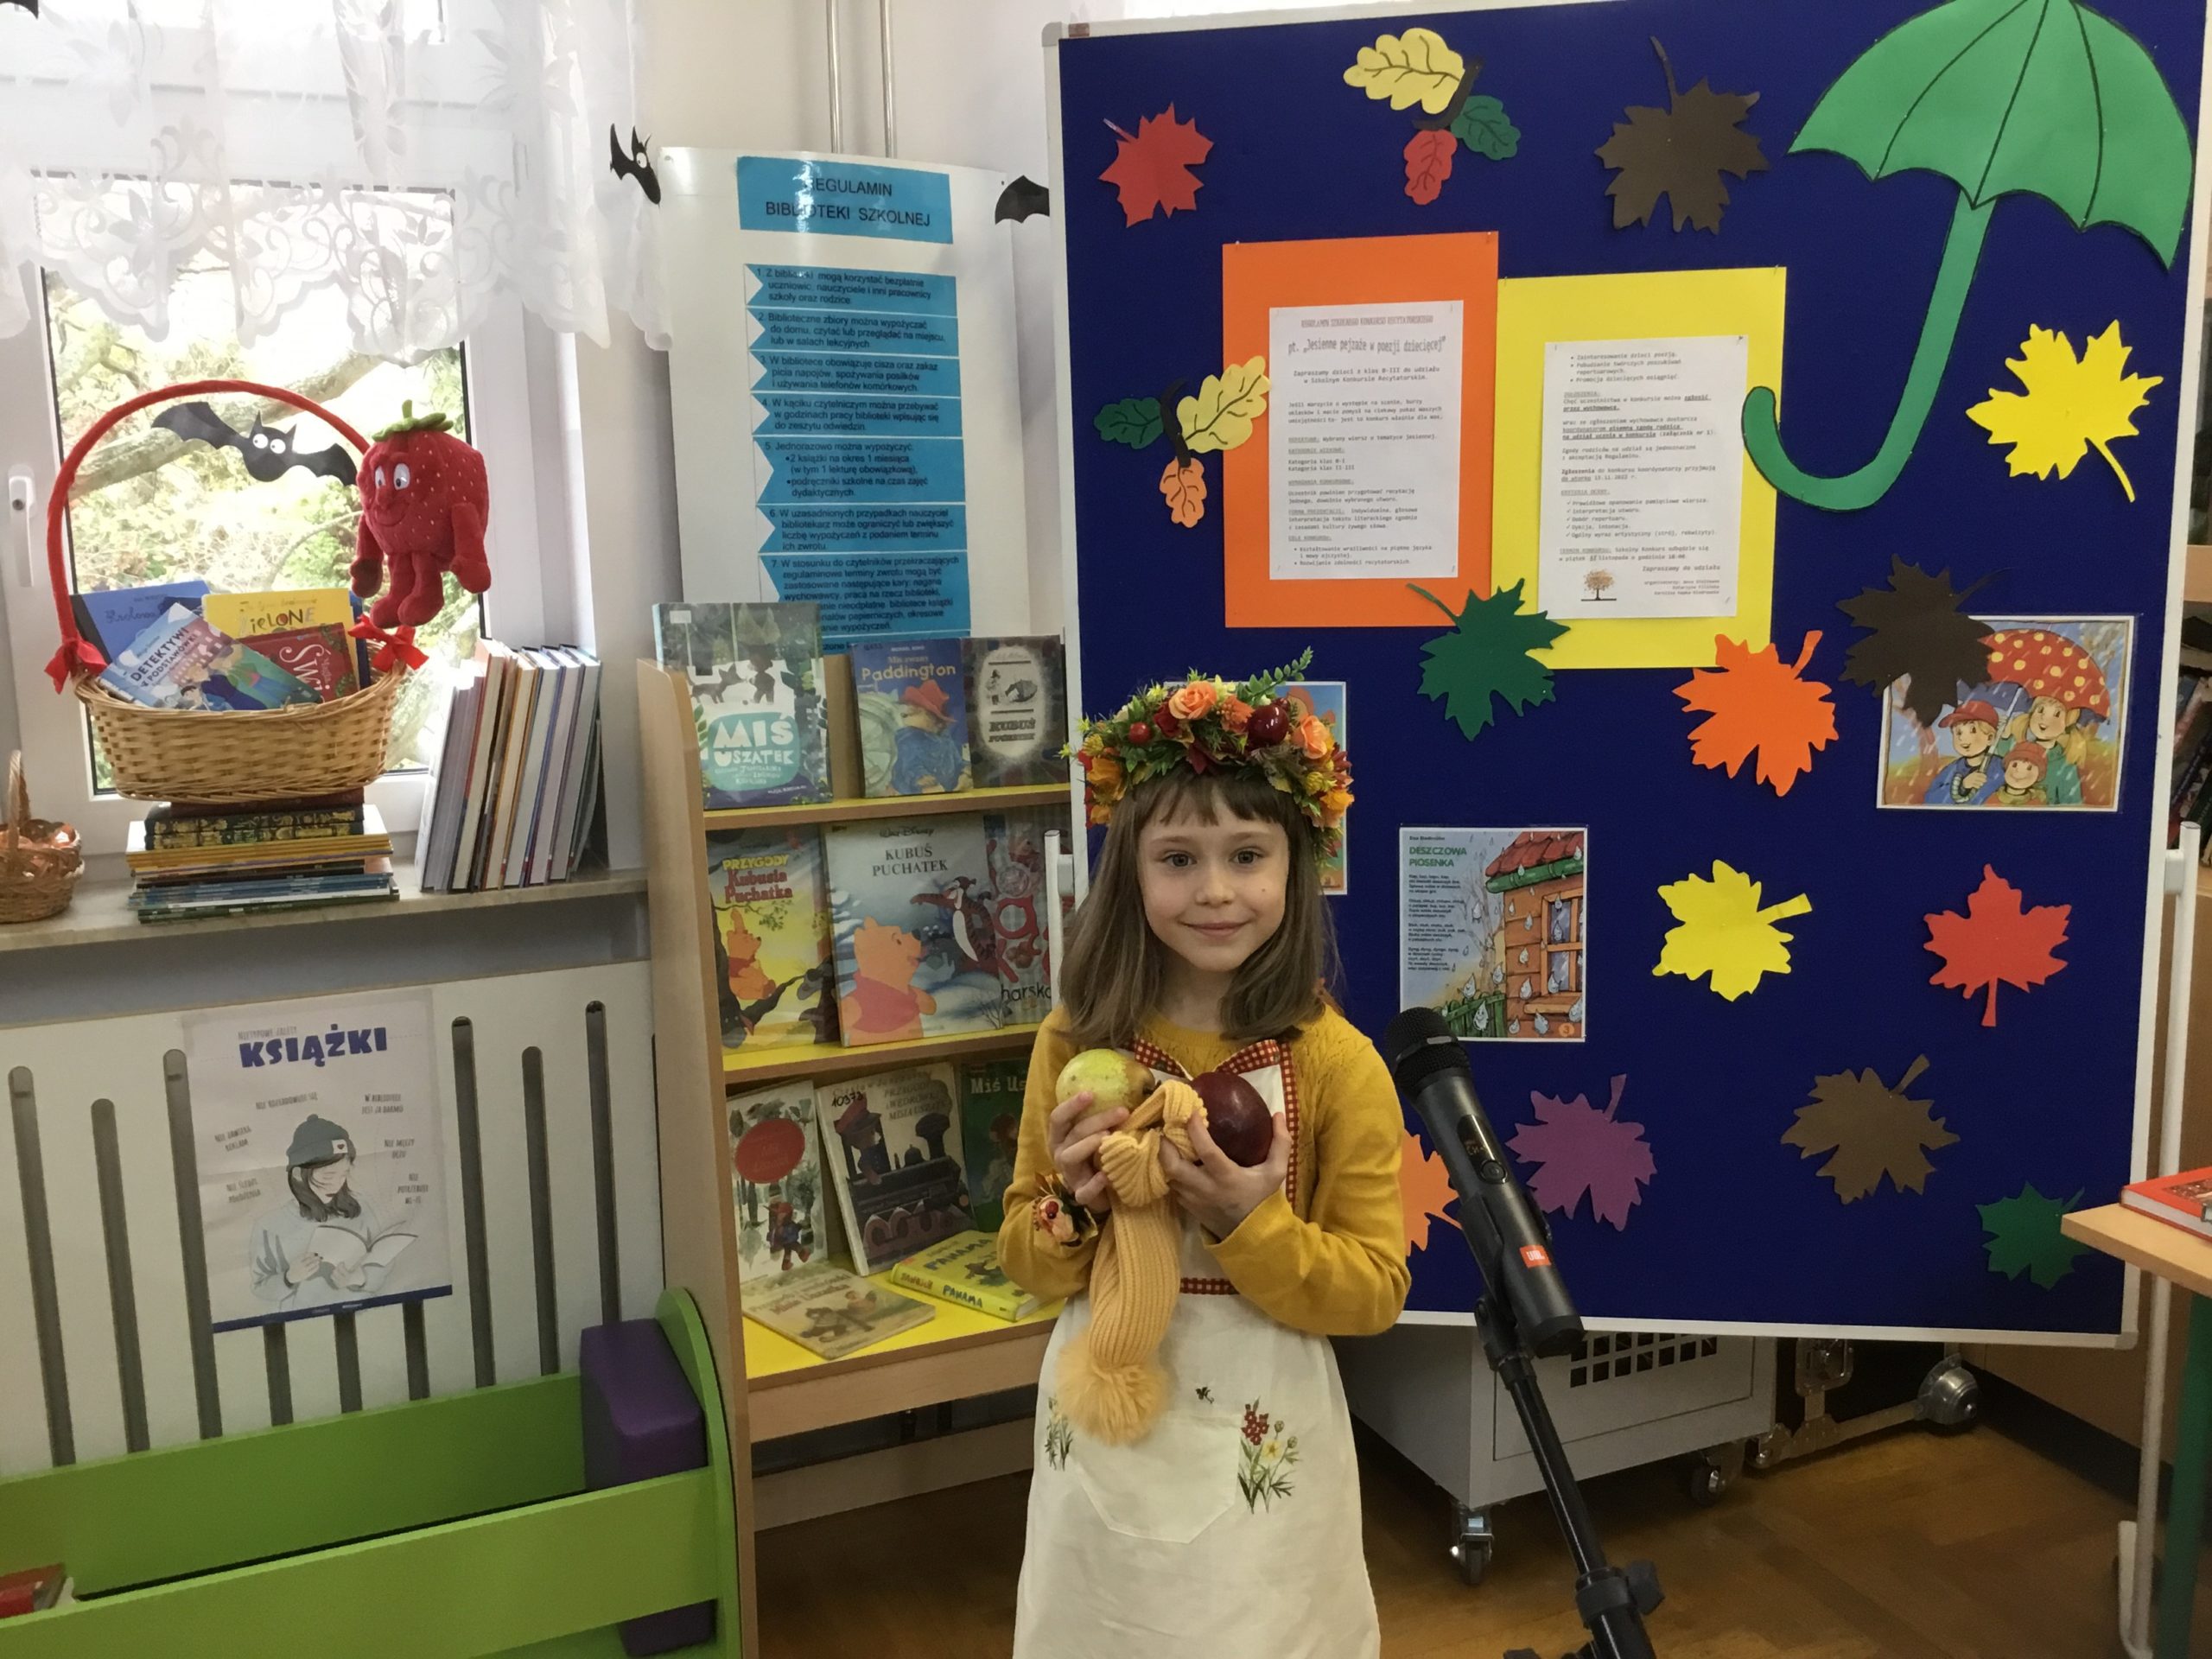 dziewczynka, która orzymała 3 miejsce podczas występu w bibliotece szkolnej, w tle tablica informująca o konkursie, na parapecie kosz z nagrodami